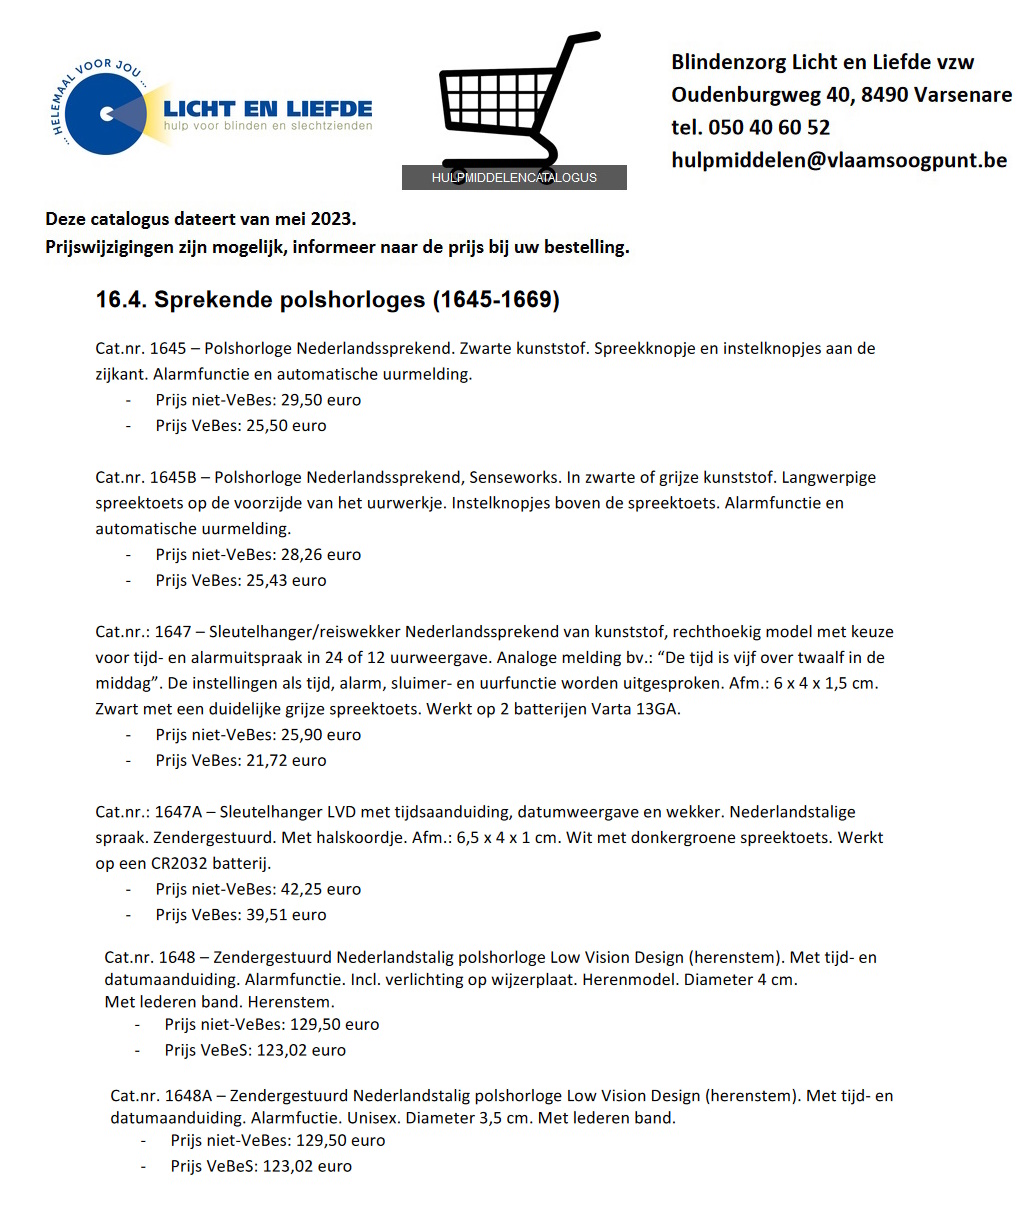 toegevoegd document 2 van Polshorloge Nederlandssprekend 1645 tot 1648 